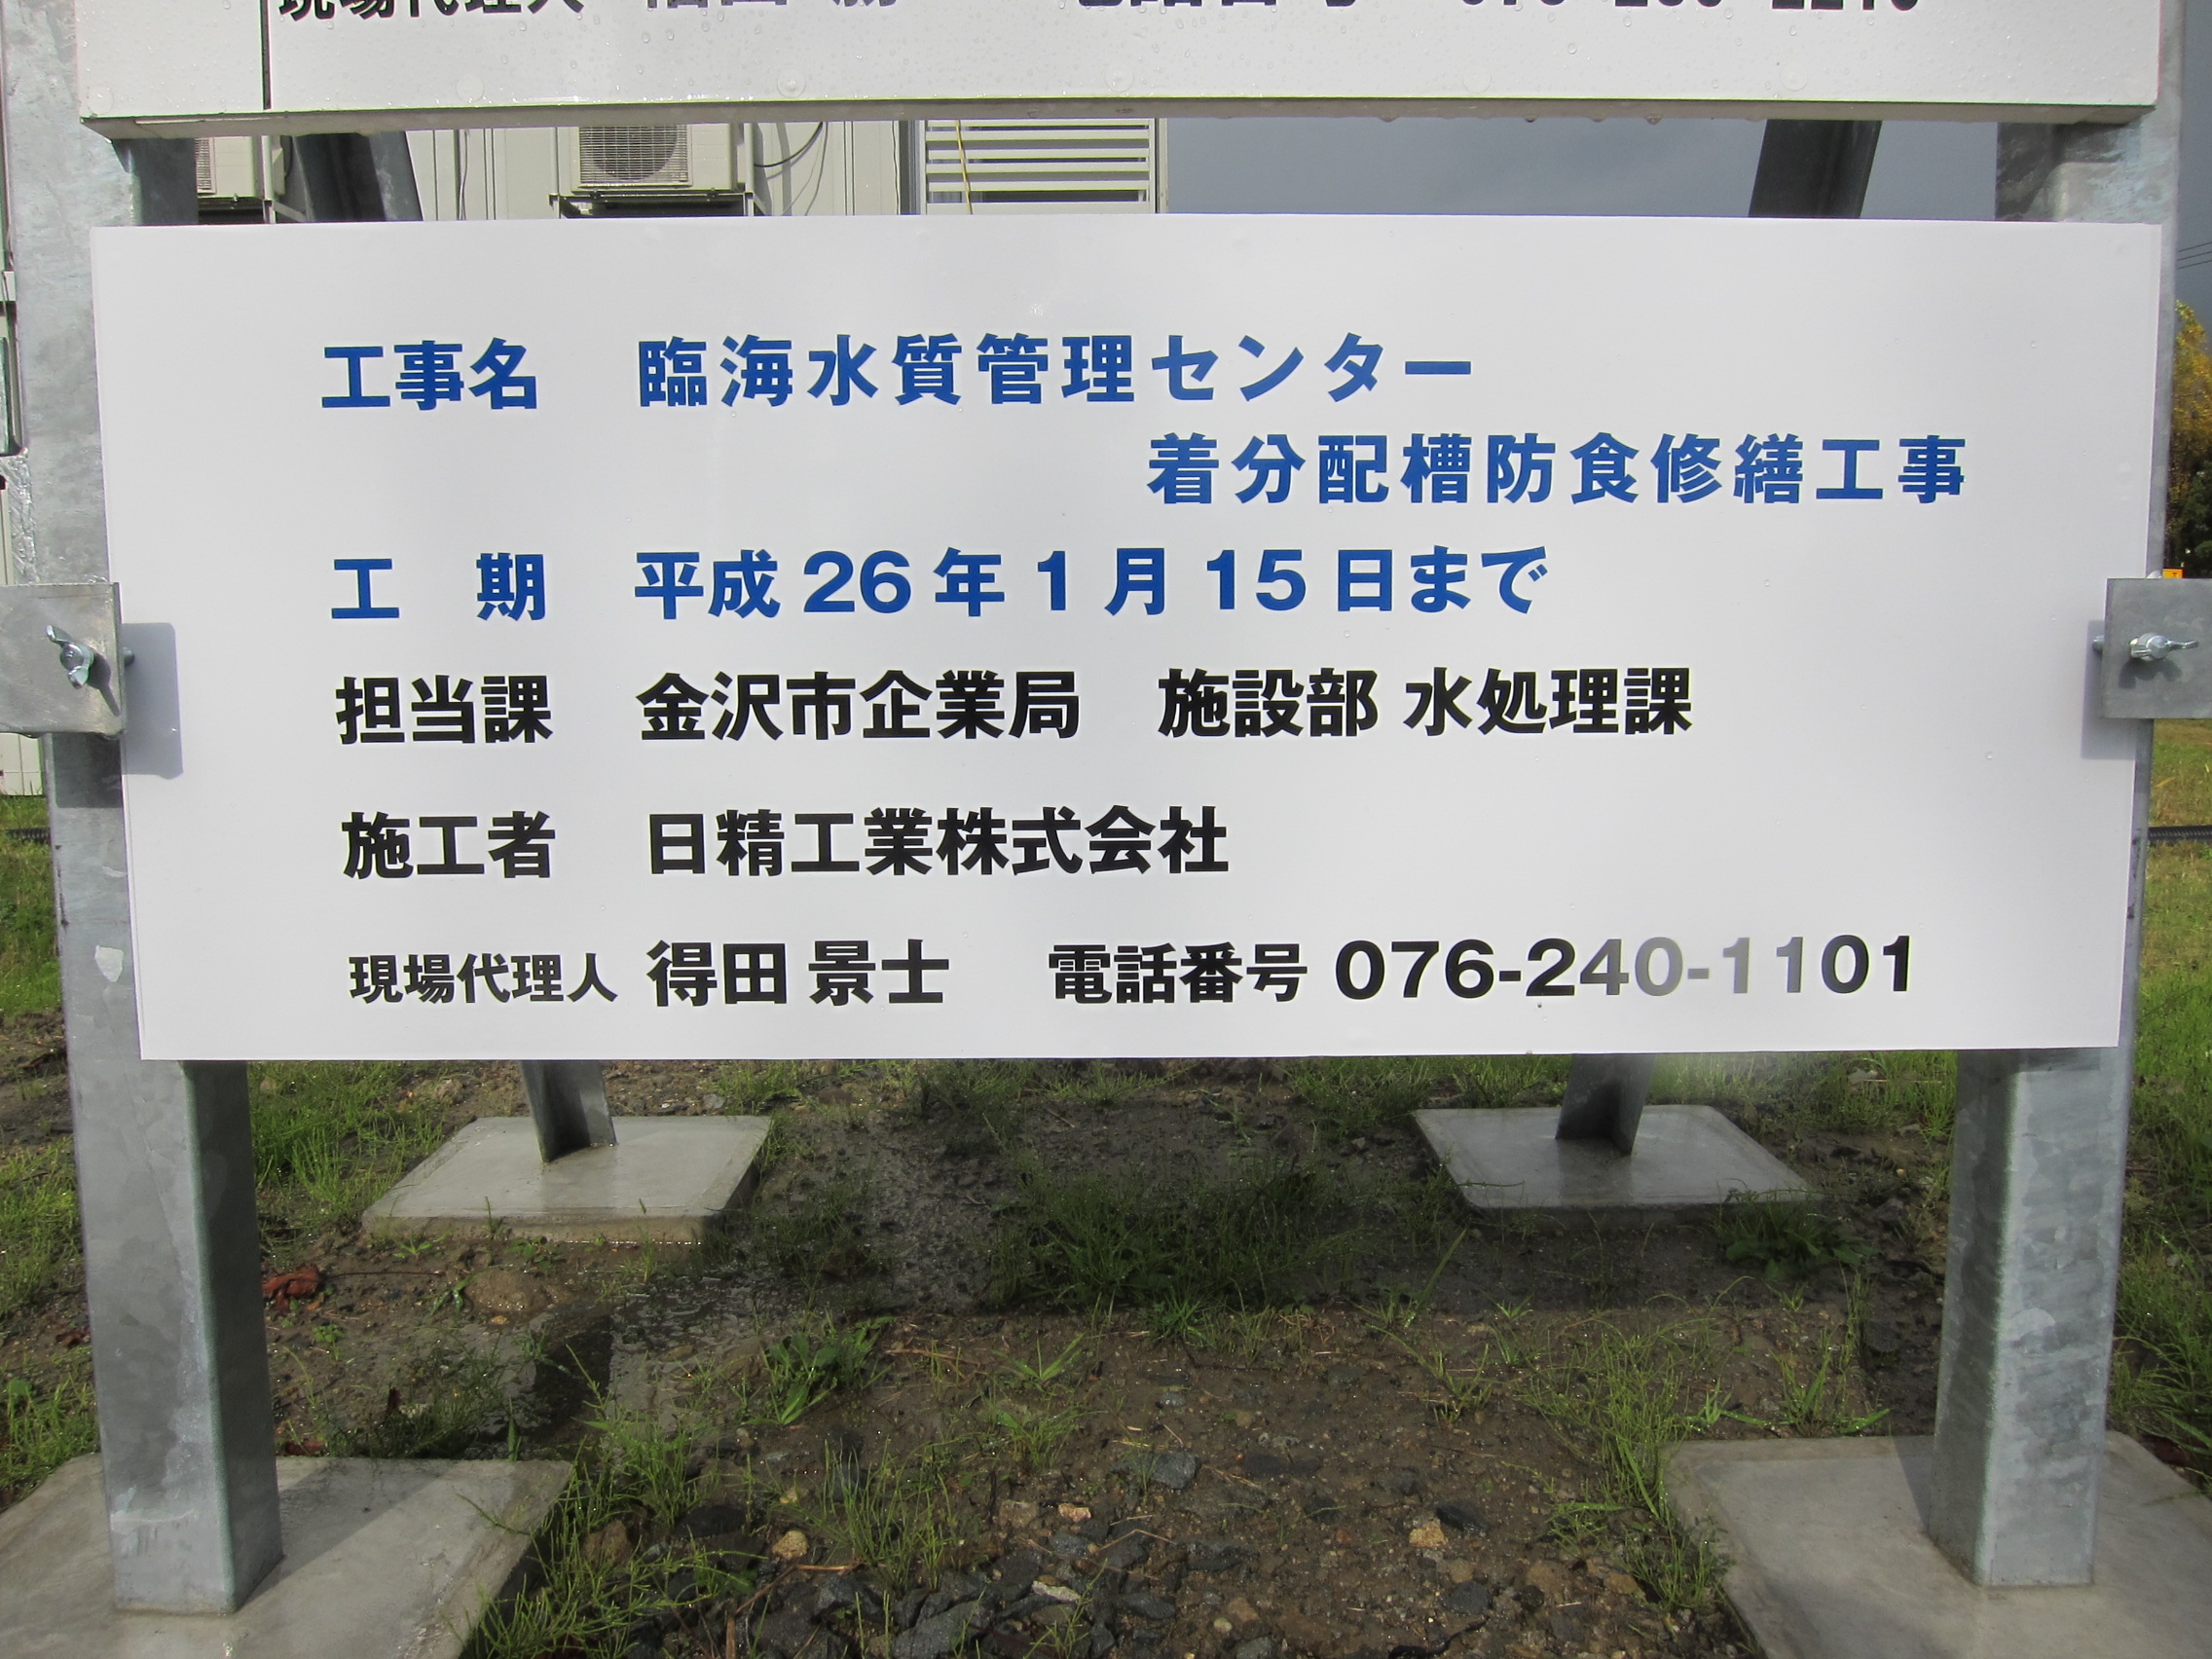 http://www.nissei-k.jp/blog/2014/02/11/IMG_7084.JPG